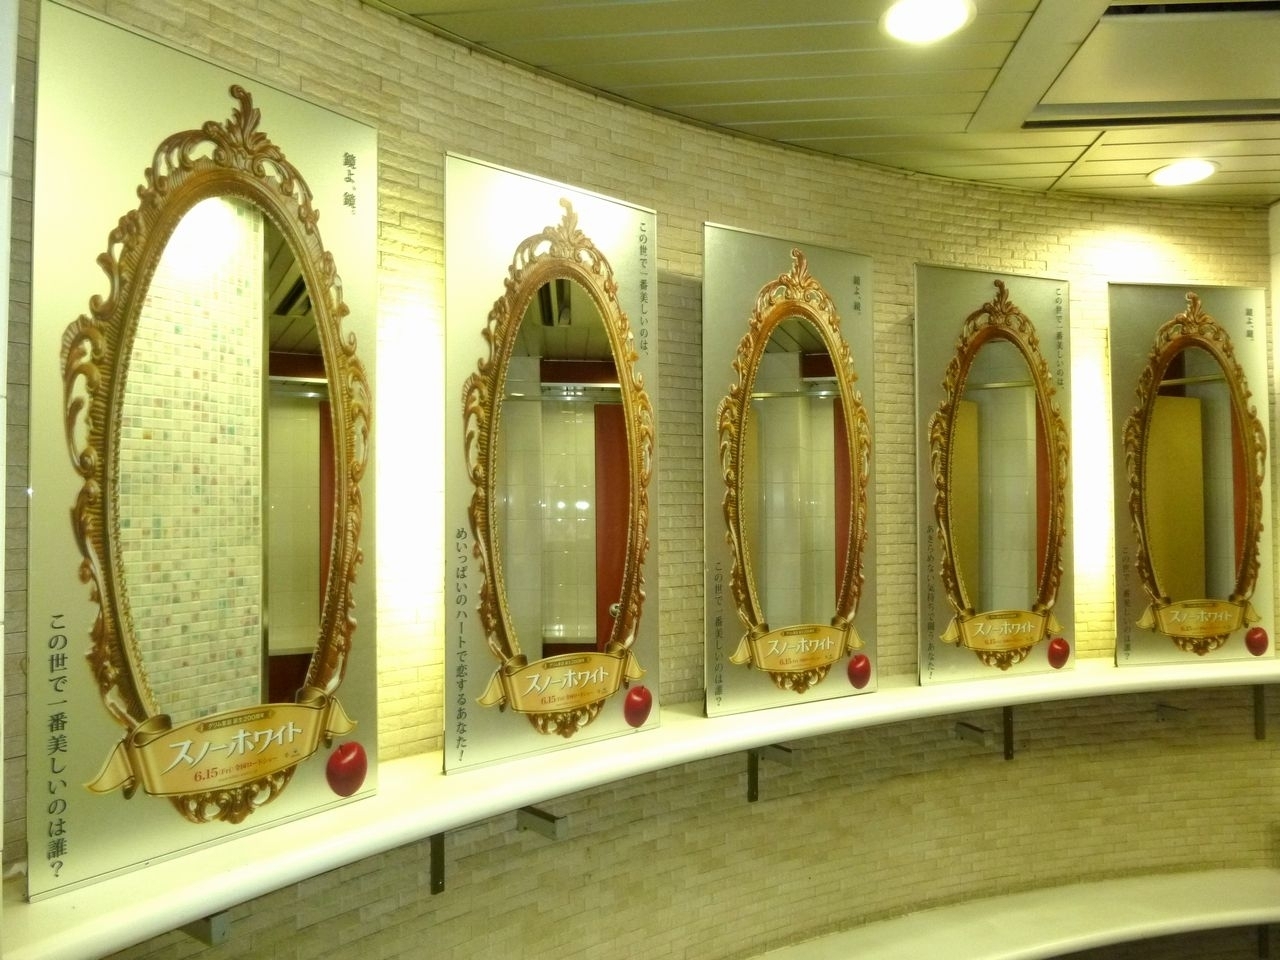 Jr駅に ルミネエストに 期間限定で 魔法の鏡 が登場 東宝東和株式会社のプレスリリース